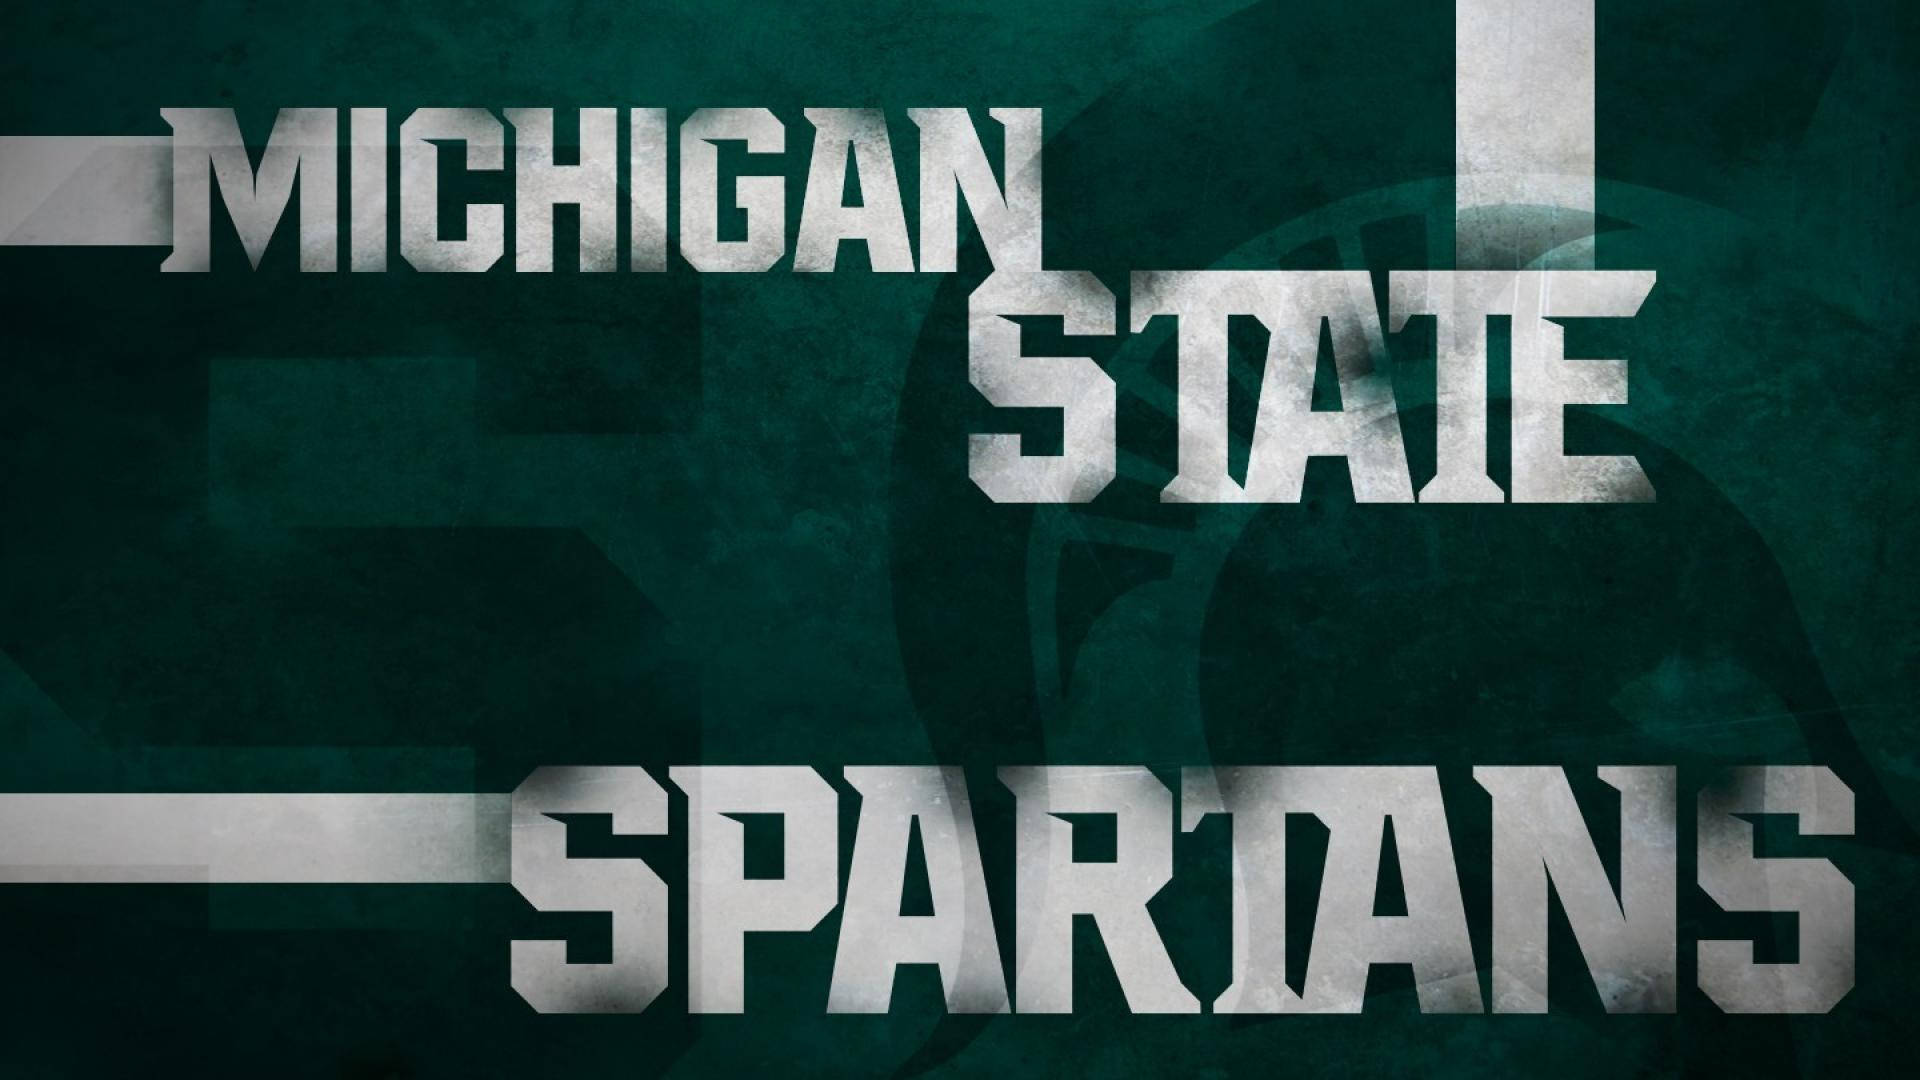 Michiganstate University Spartans Är Fantastiska. Wallpaper